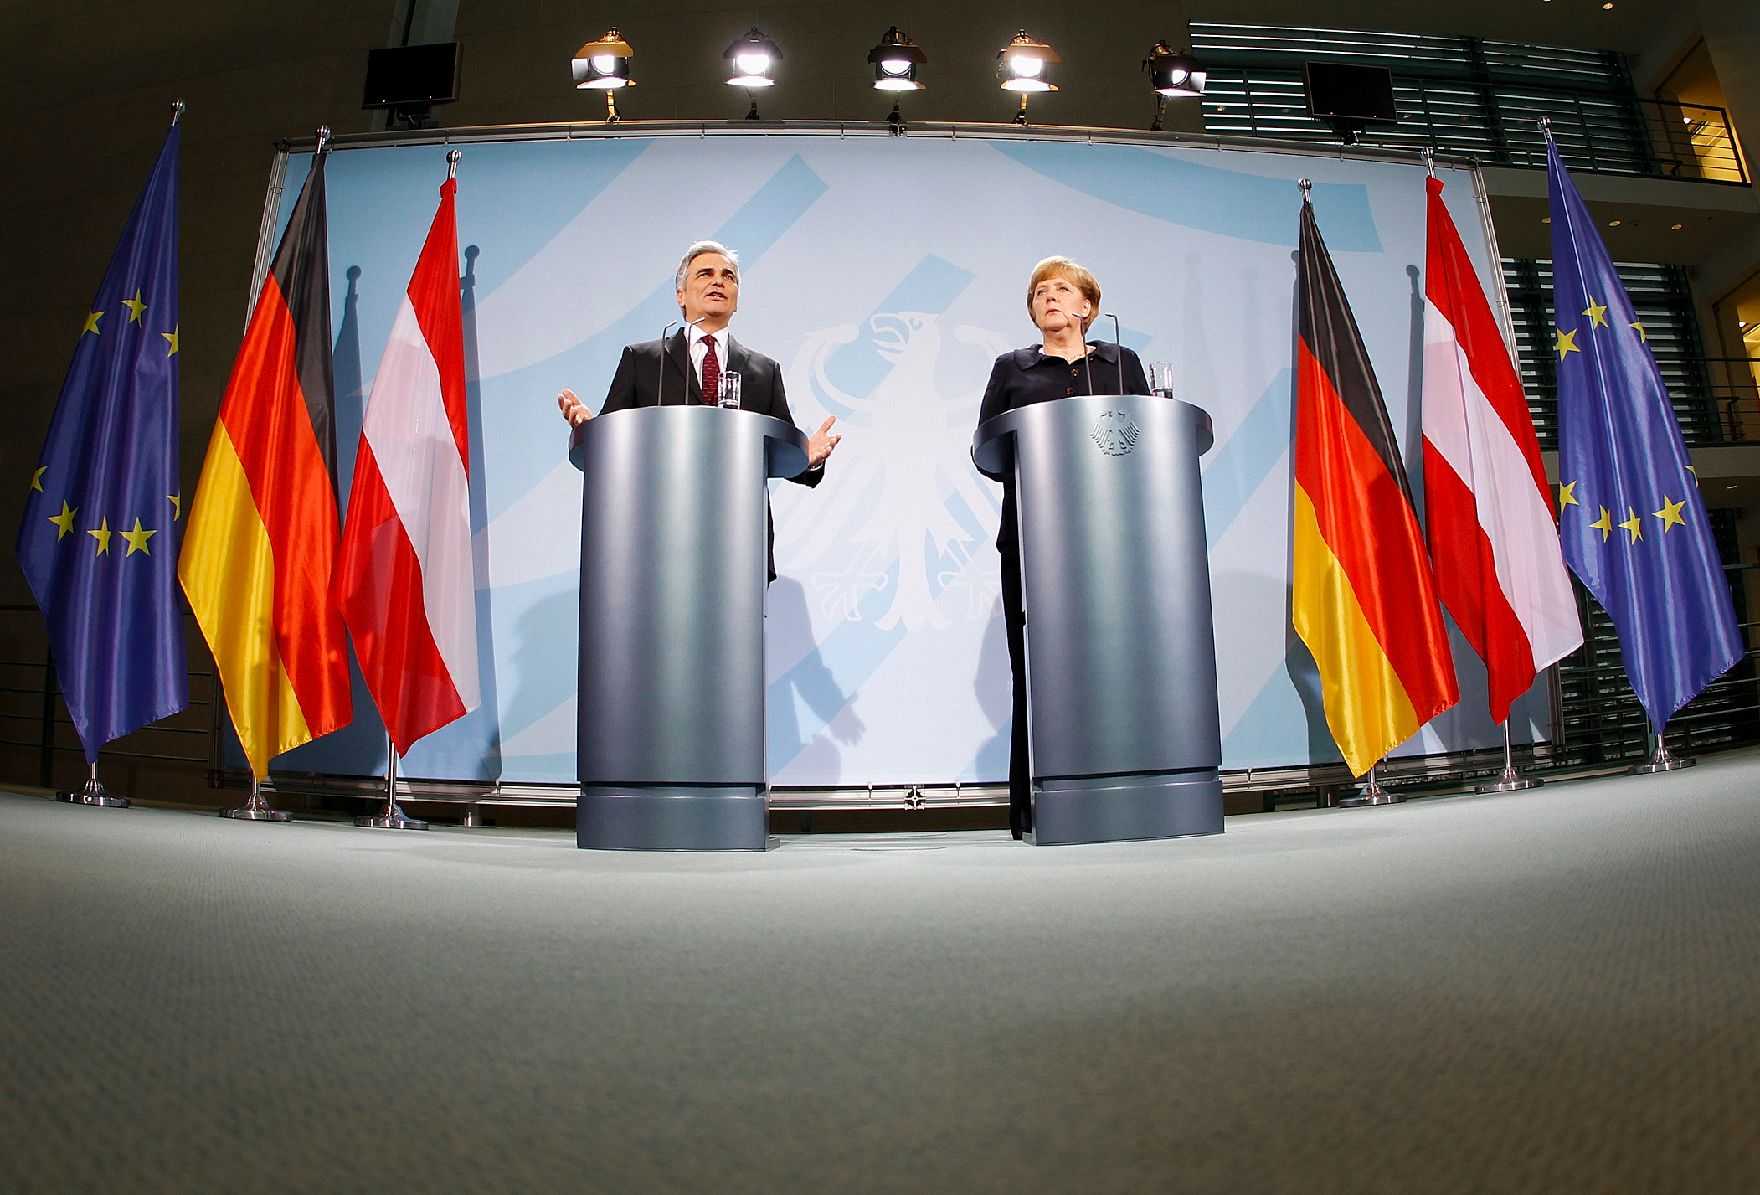 Am 2. Dezember 2011 reiste der Österreichische Bundeskanzler zu einem Arbeitsgespräch mit der deutschen Bundeskanzlerin nach Berlin. Im Bild Bundeskanzler Werner Faymann (l.) mit seiner deutschen Amtskollegin Angela Merkel (r.) bei der gemeinsamen Pressekonferenz.